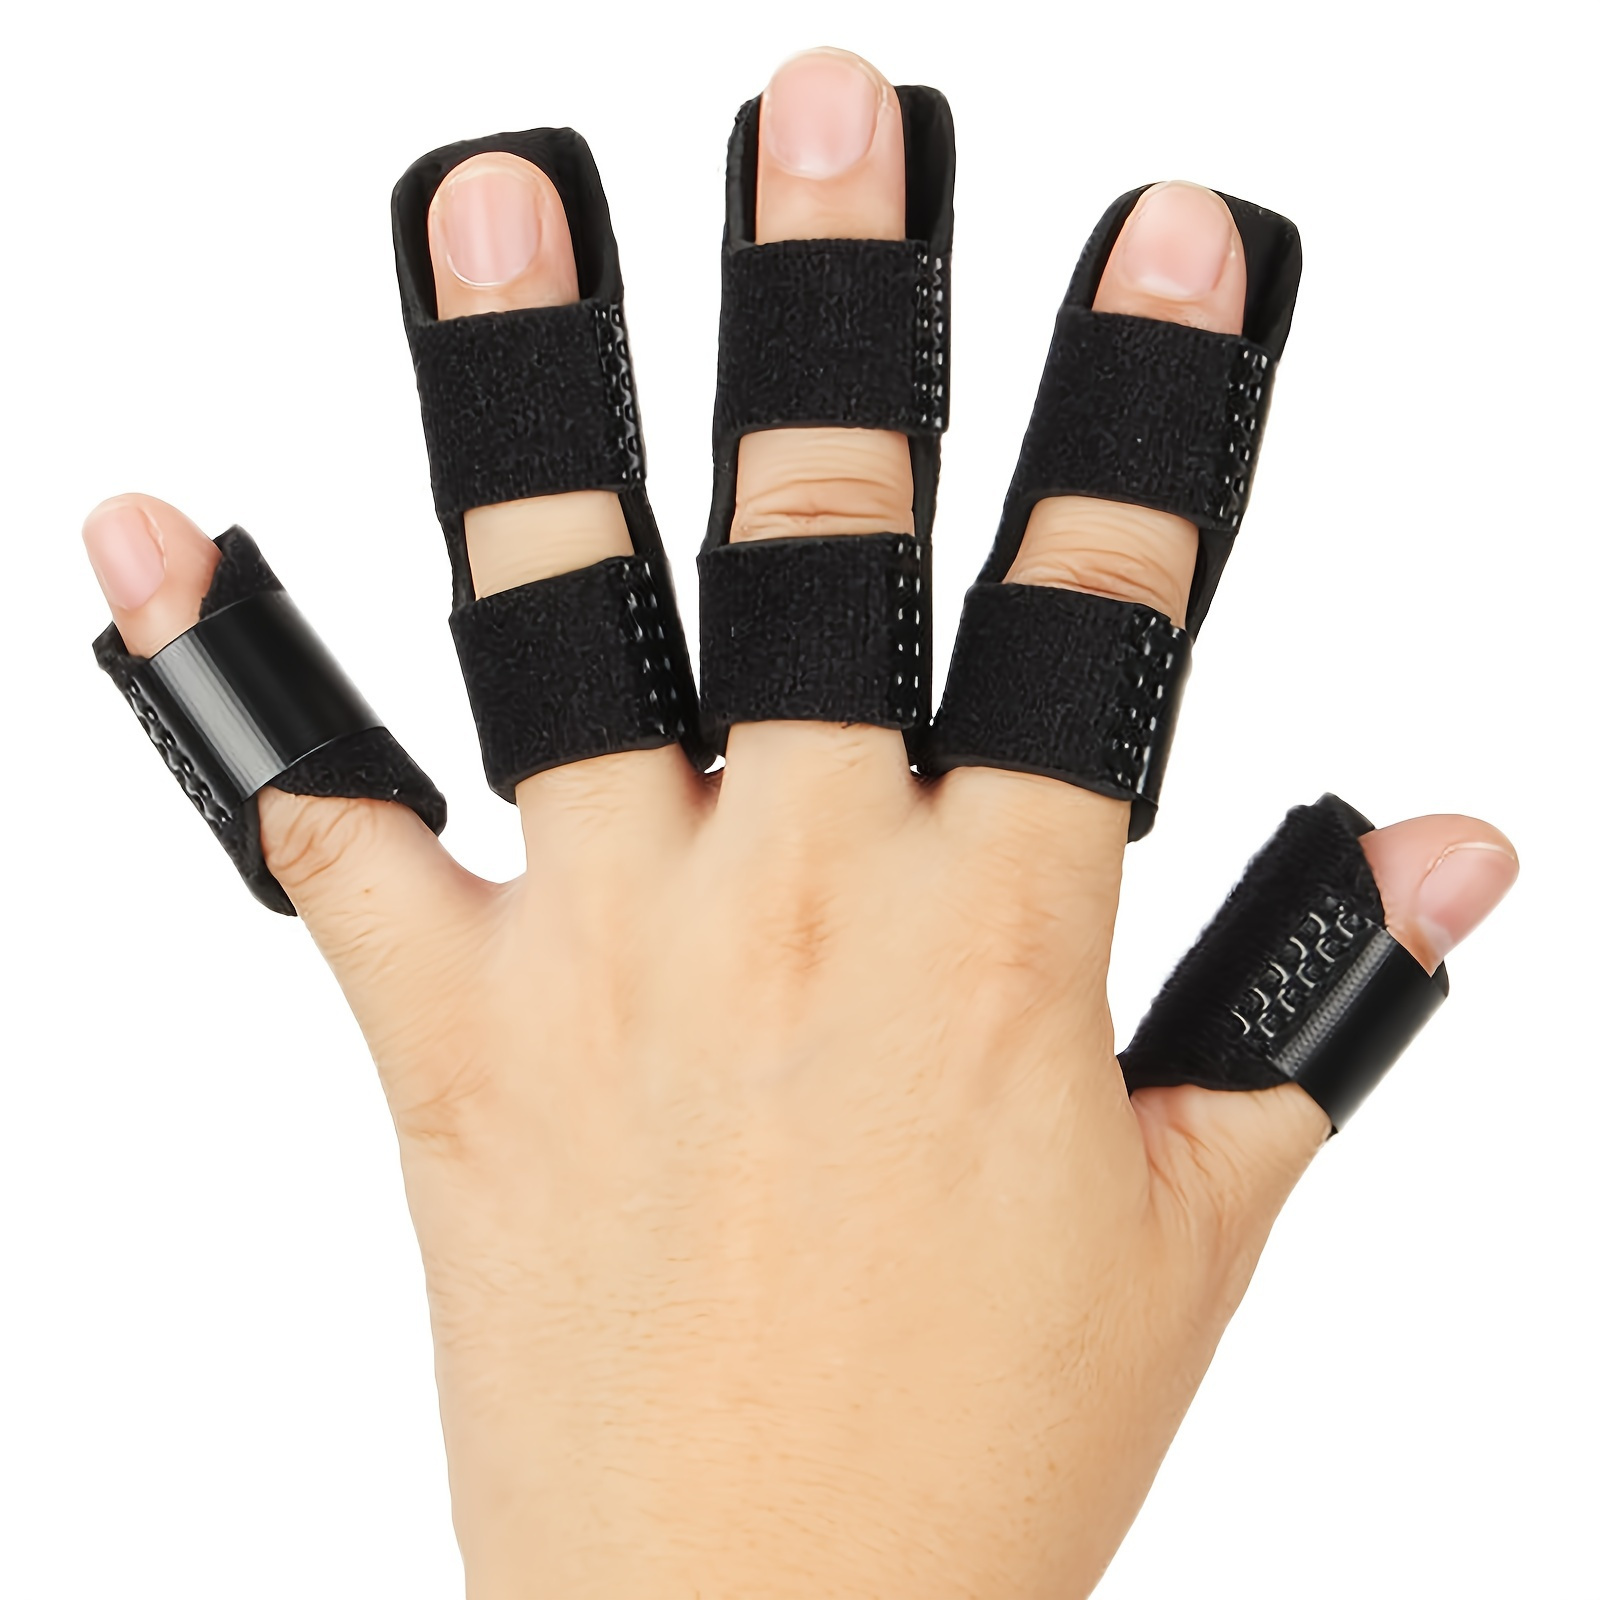 Férula de dedo gatillo, férulas de dedo para pulgar, índice, medio, anillo  y meñique, soporte de dedo para tendinitis, rigidez, curva, doblada